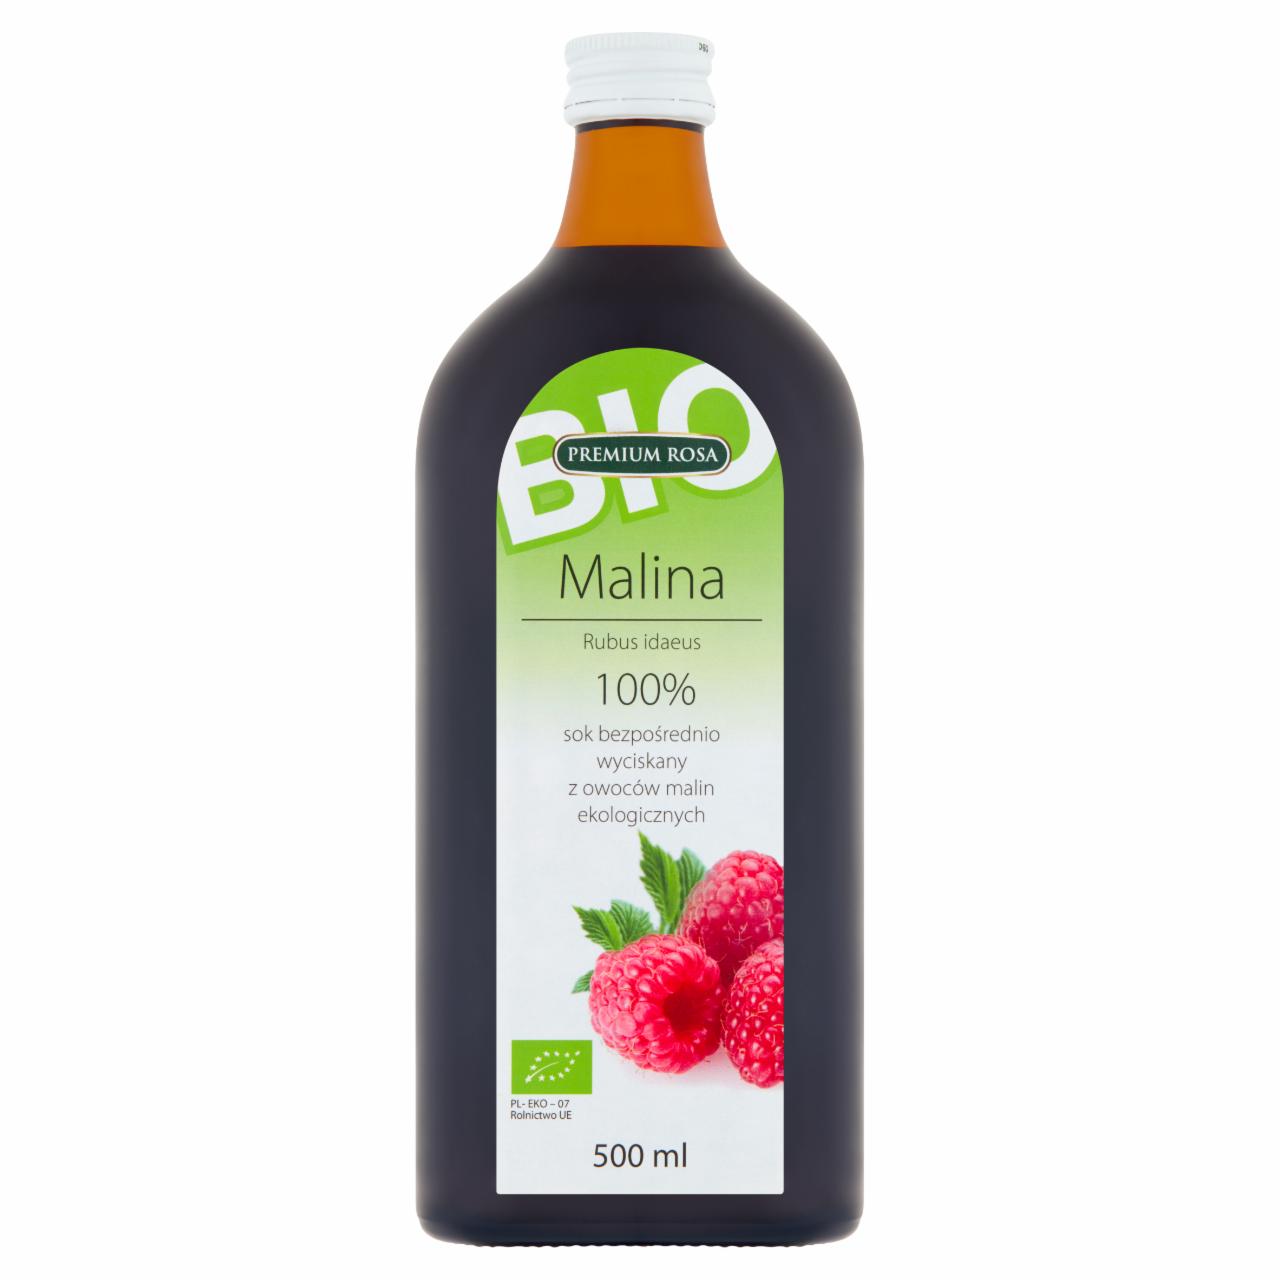 Zdjęcia - Premium Rosa Bio Sok bezpośrednio wyciskany z owoców malin ekologicznych 500 ml